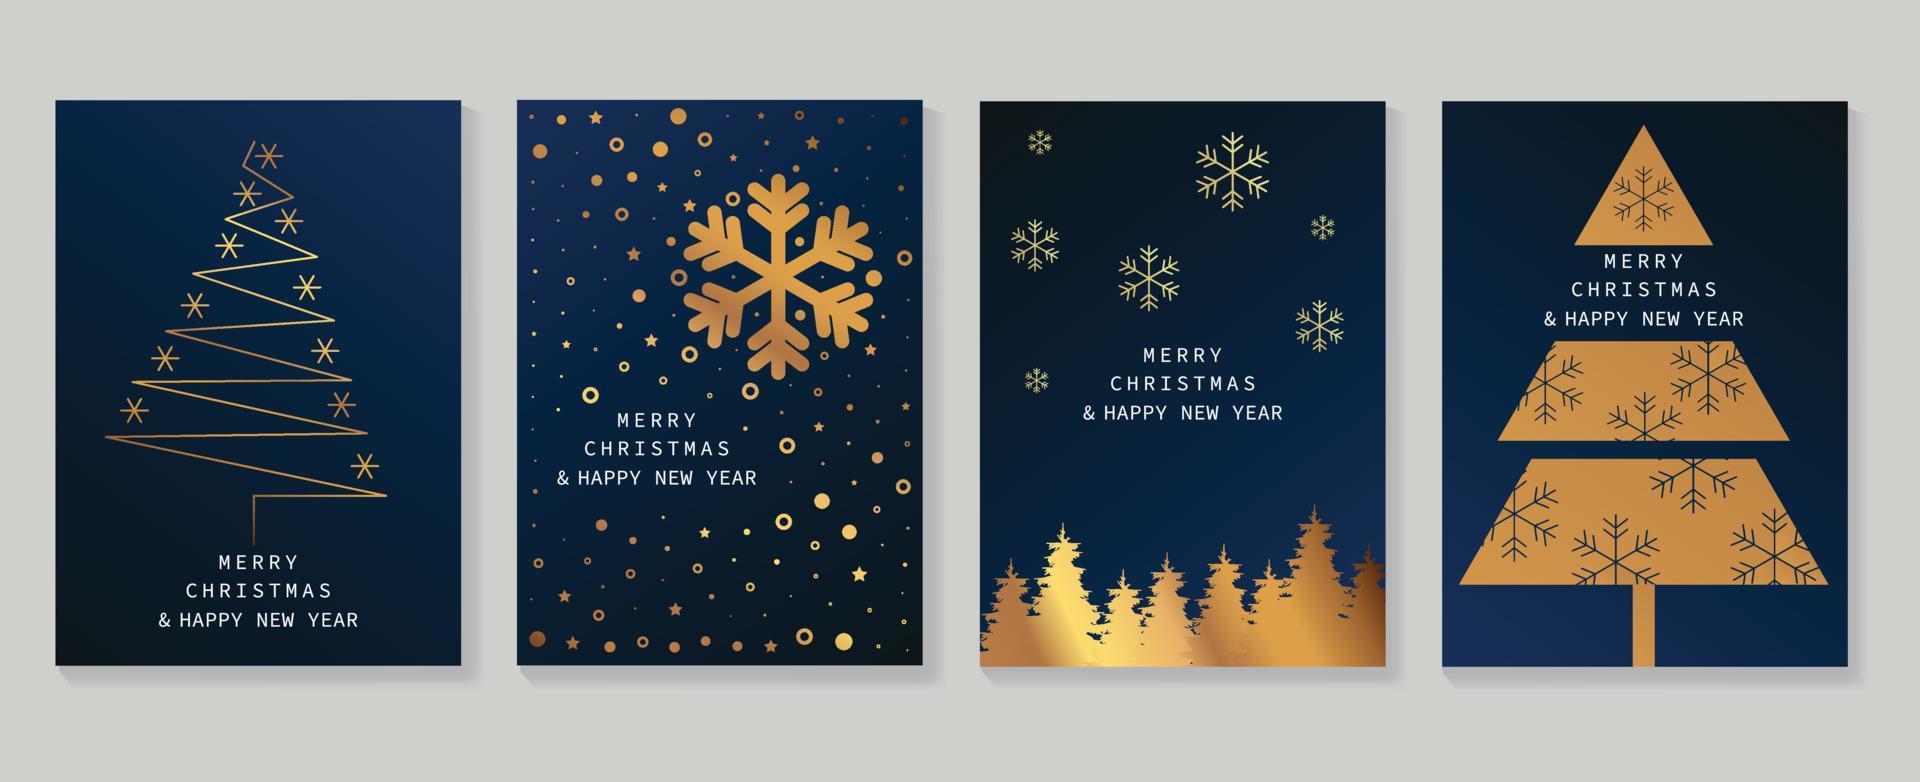 Navidad de lujo y feliz año nuevo conjunto de vectores de plantilla de portada de vacaciones. árbol de navidad dorado degradado decorado con copos de nieve. ilustración de diseño para tarjeta, empresa, saludo, papel tapiz, afiche.